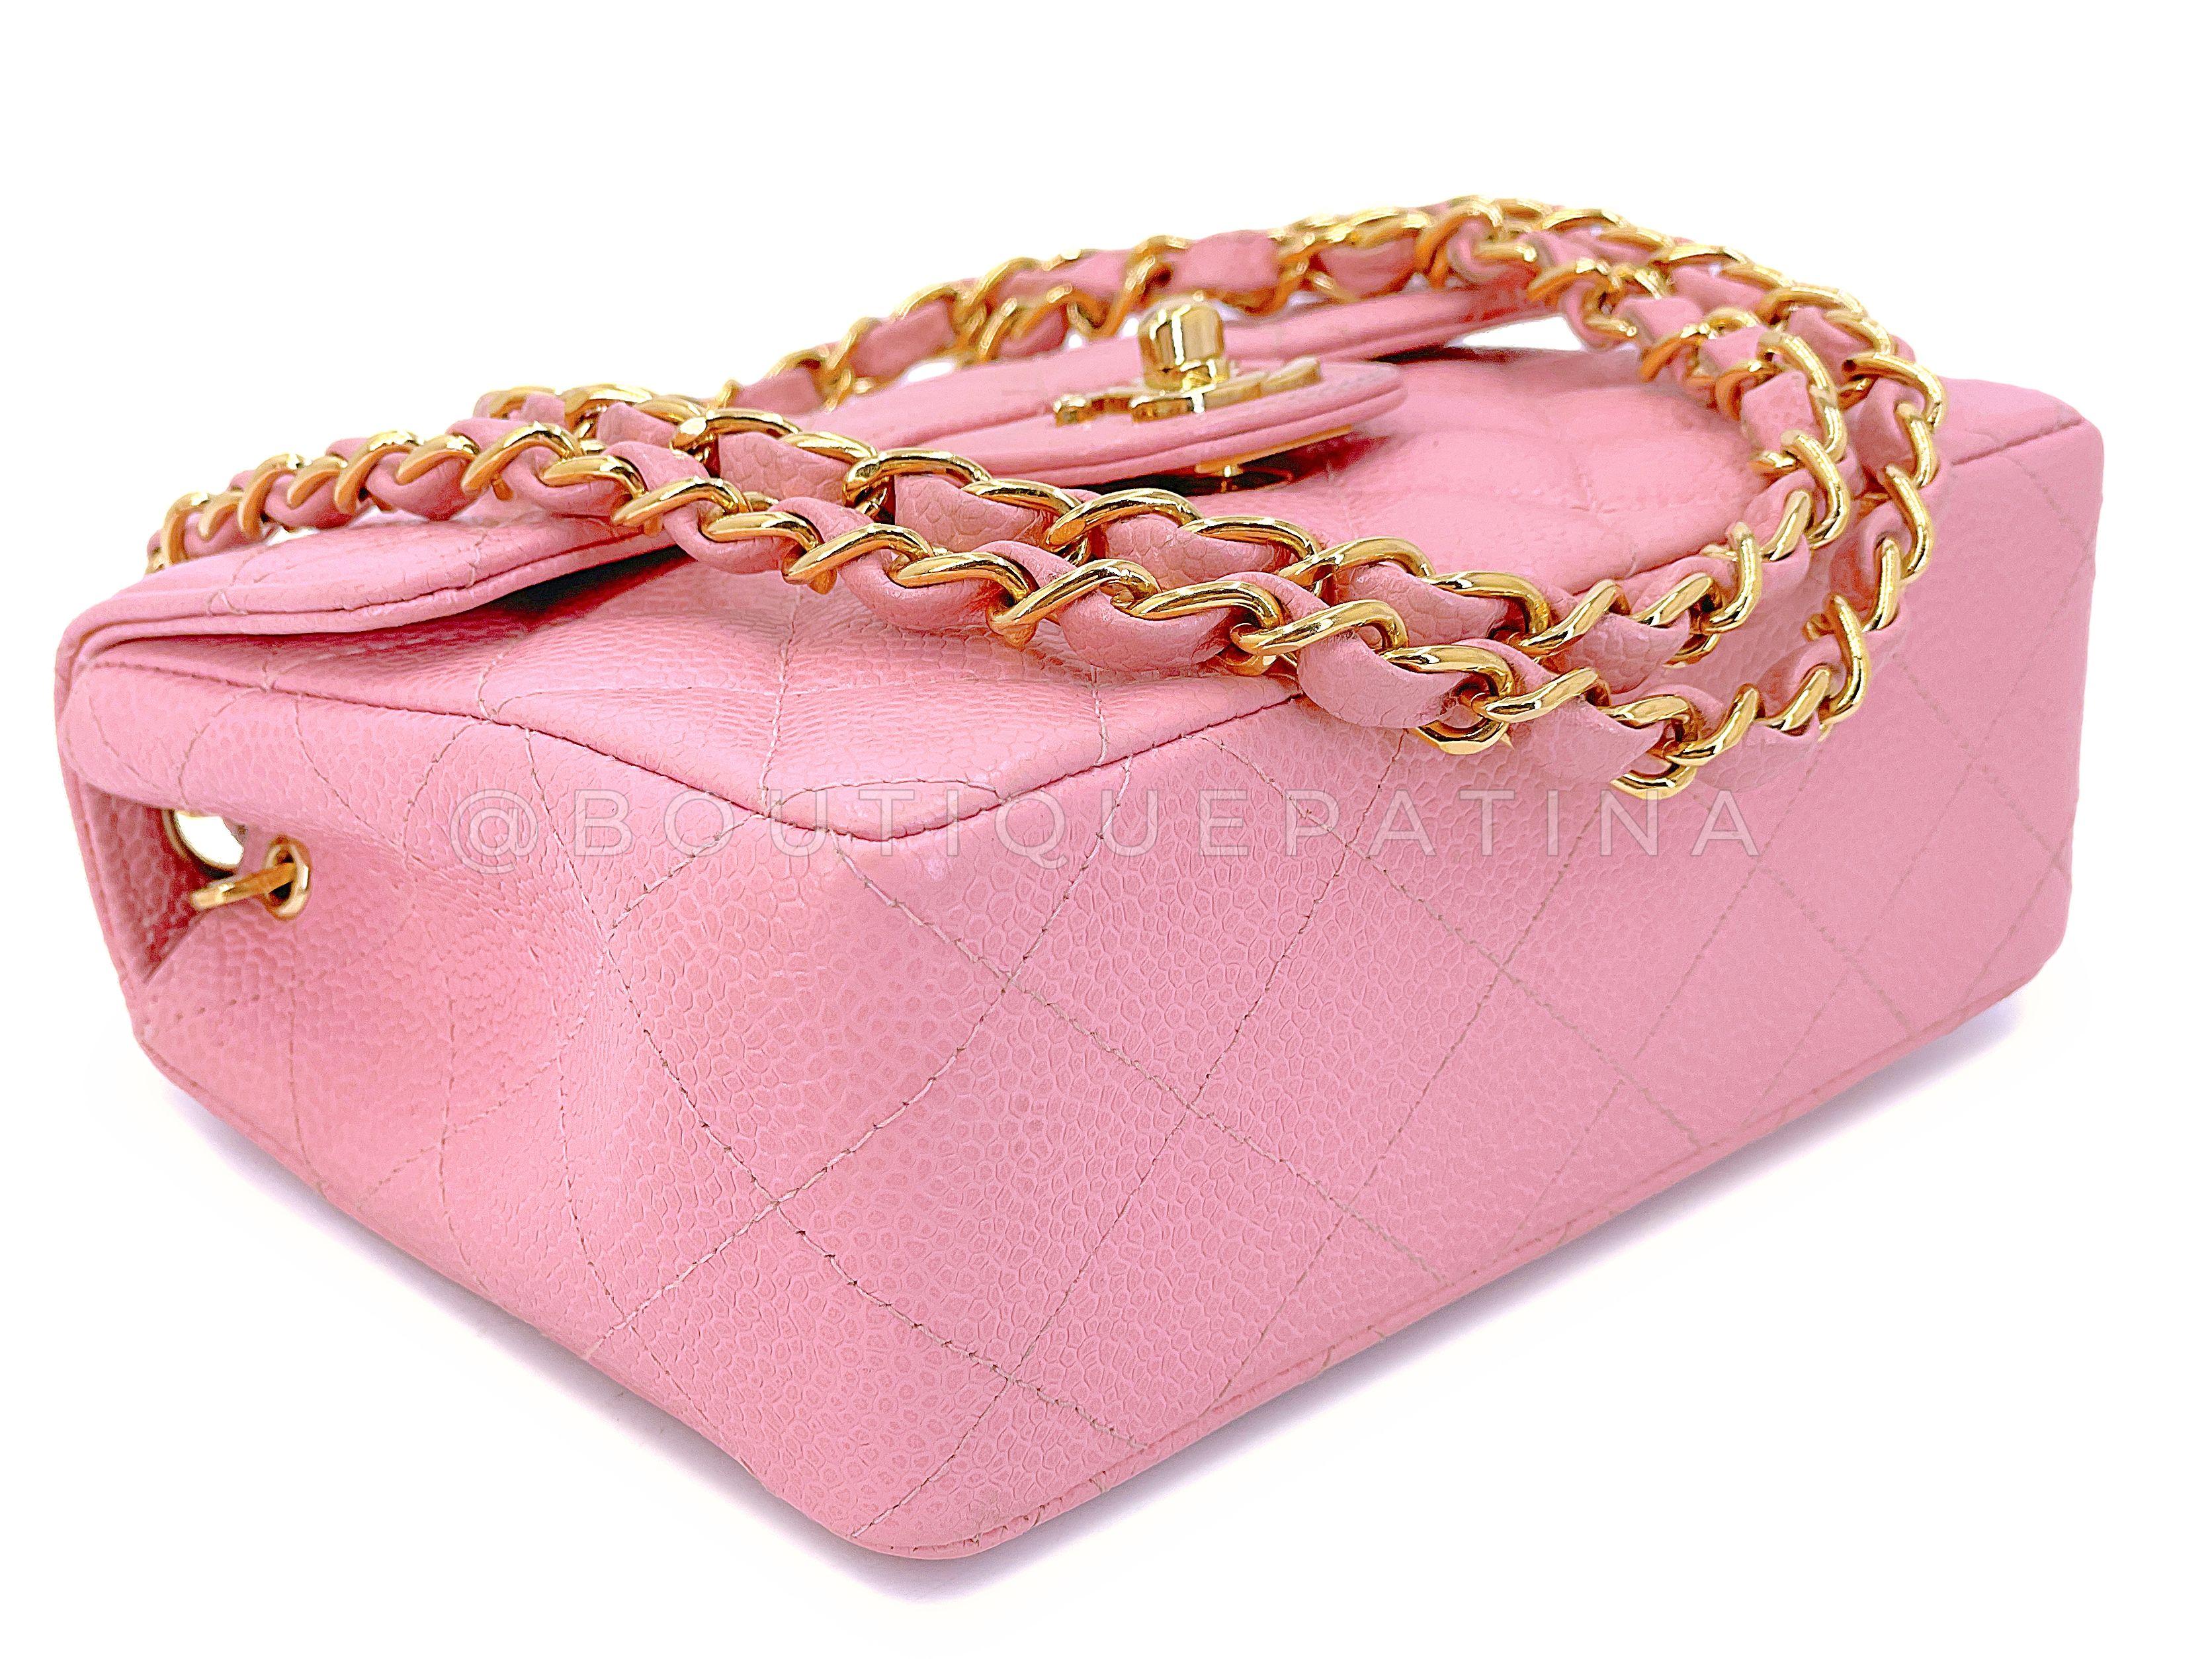 Chanel 2004 Vintage Sakura Pink Square Mini Flap Bag 24k GHW 67727 For Sale 3